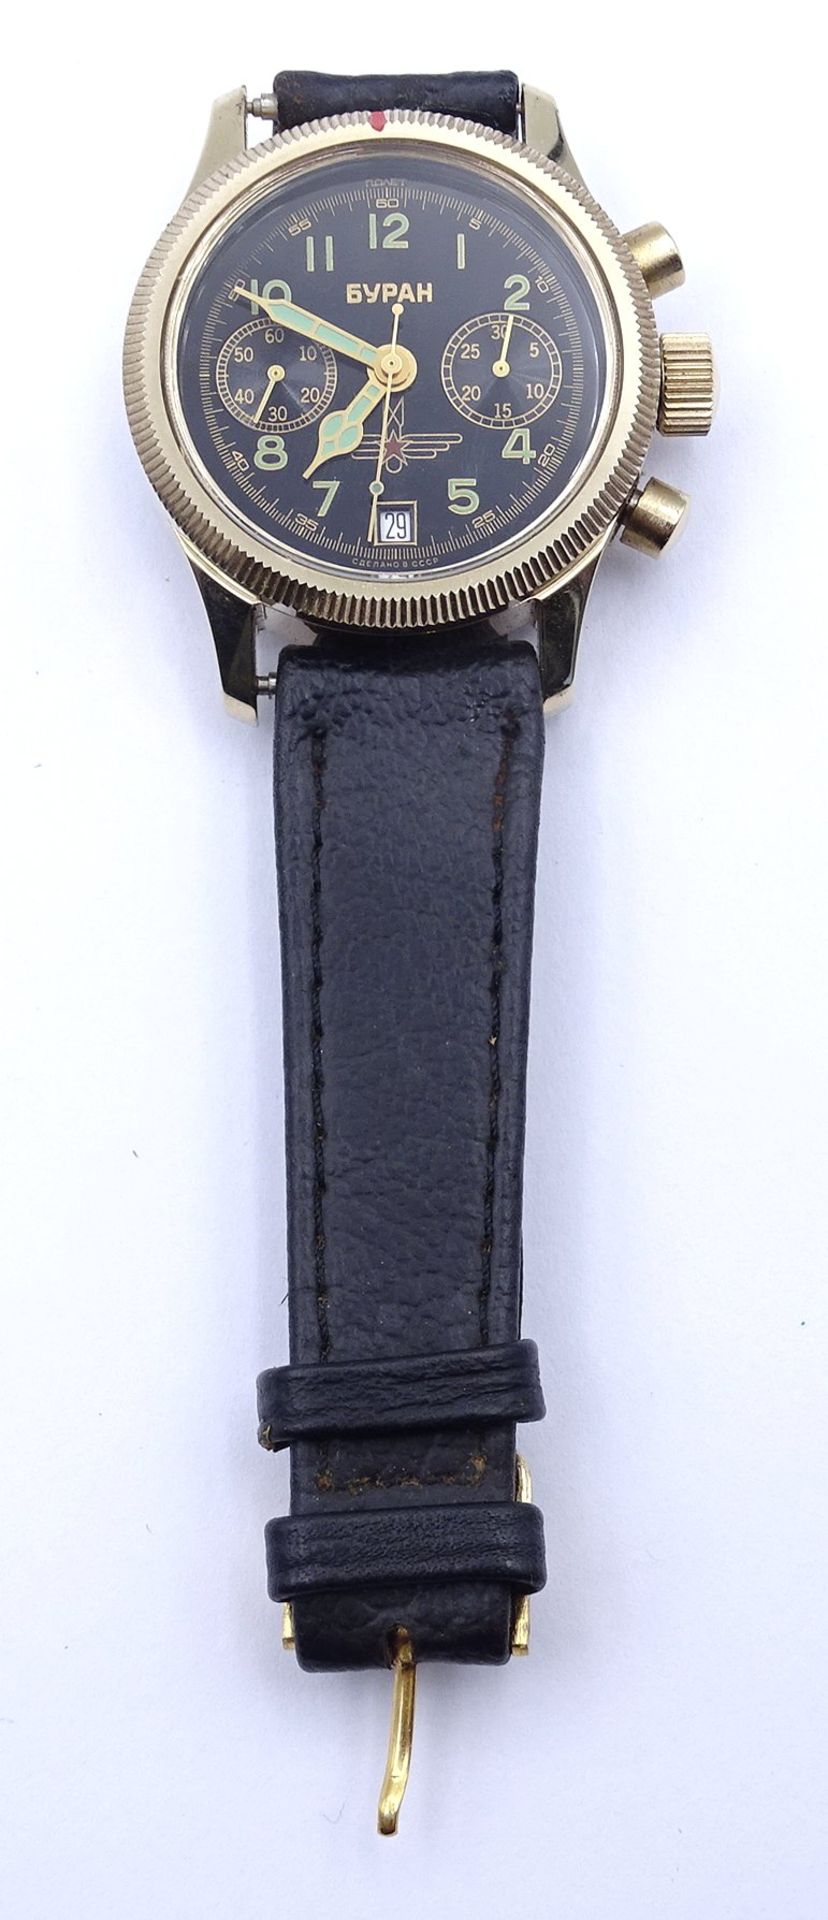 russ. Herren Armbanduhr, mechanisch,D.38mm, Stoppuhr läuft, Rückstelltaste aber ohne Funktion, nur - Image 4 of 4